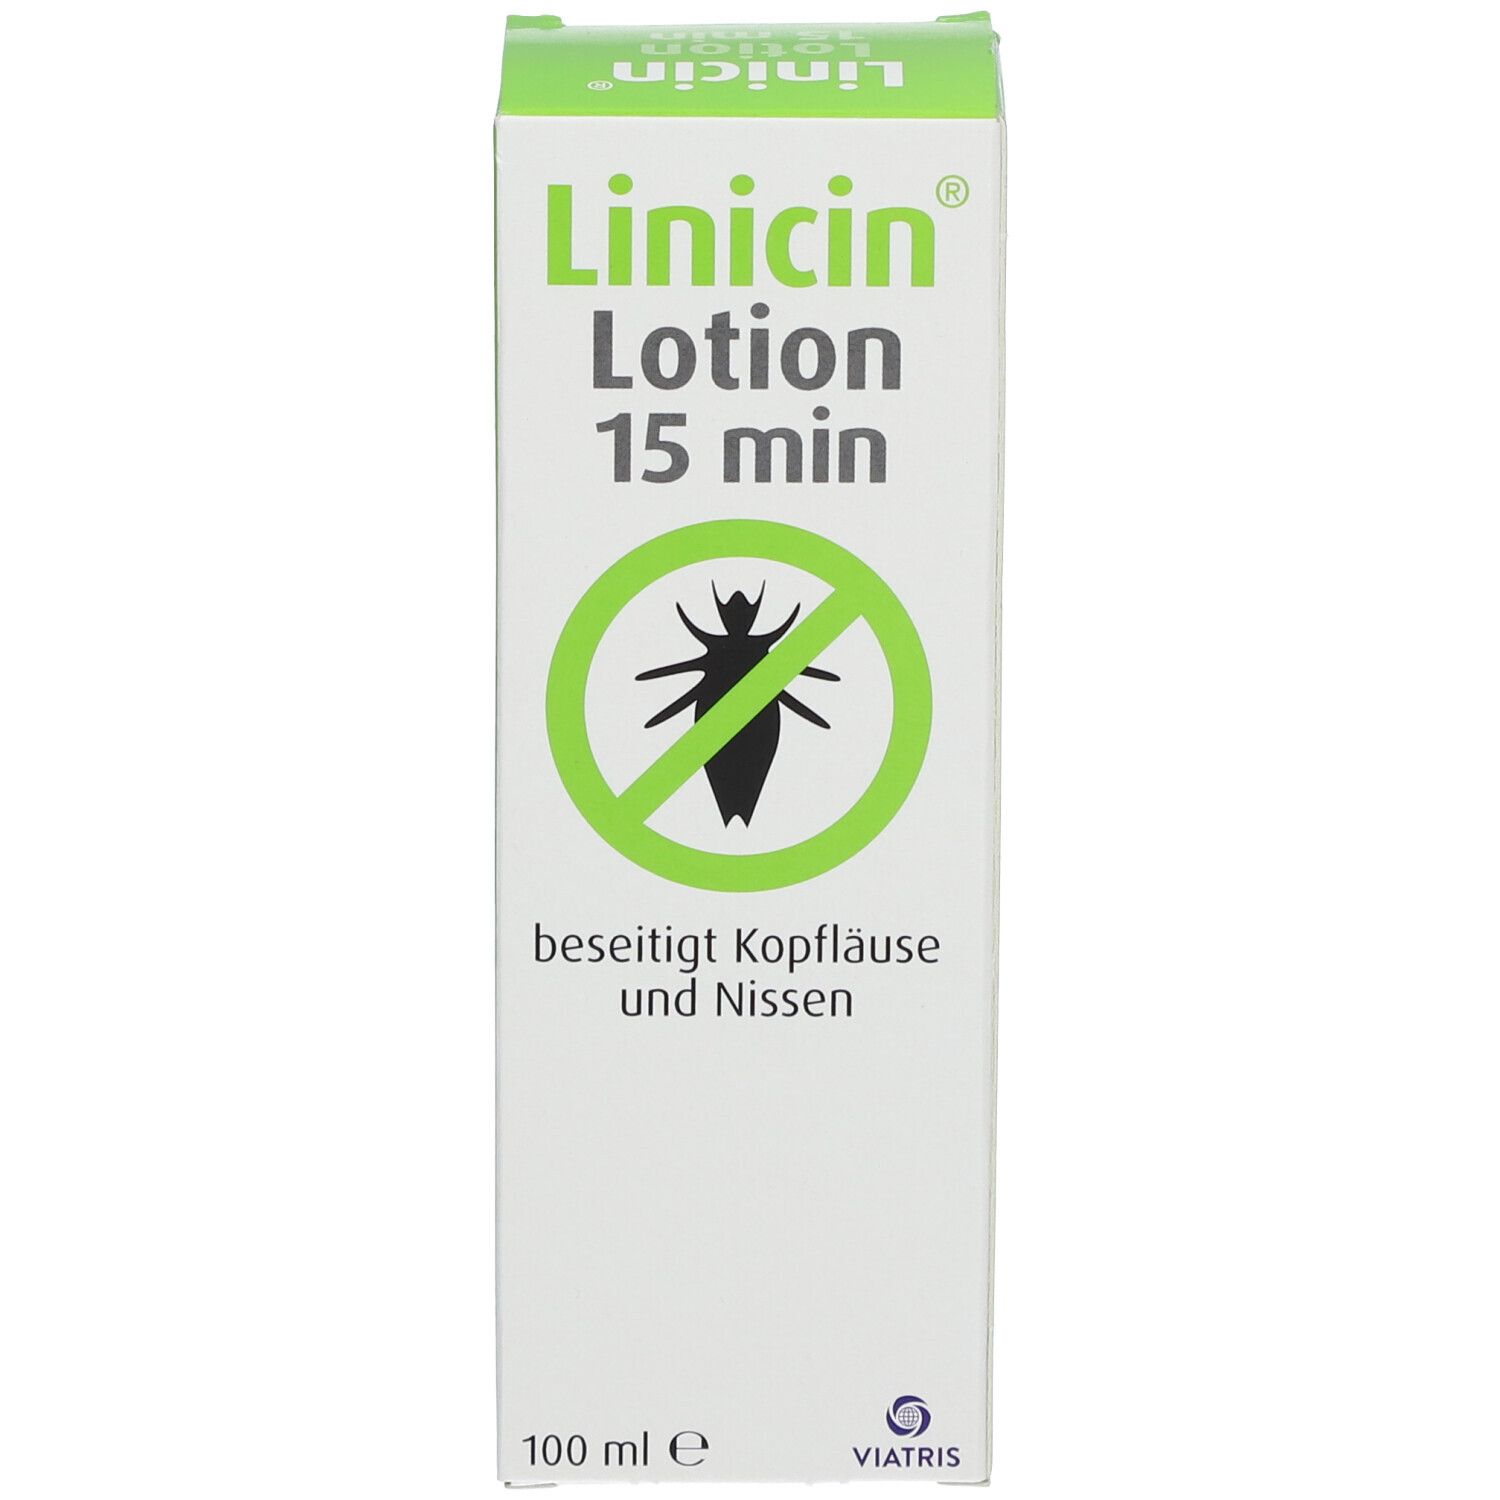 Linicin Lotion (100 ml) - Läusemittel zur Behandlung von Kopfläusen